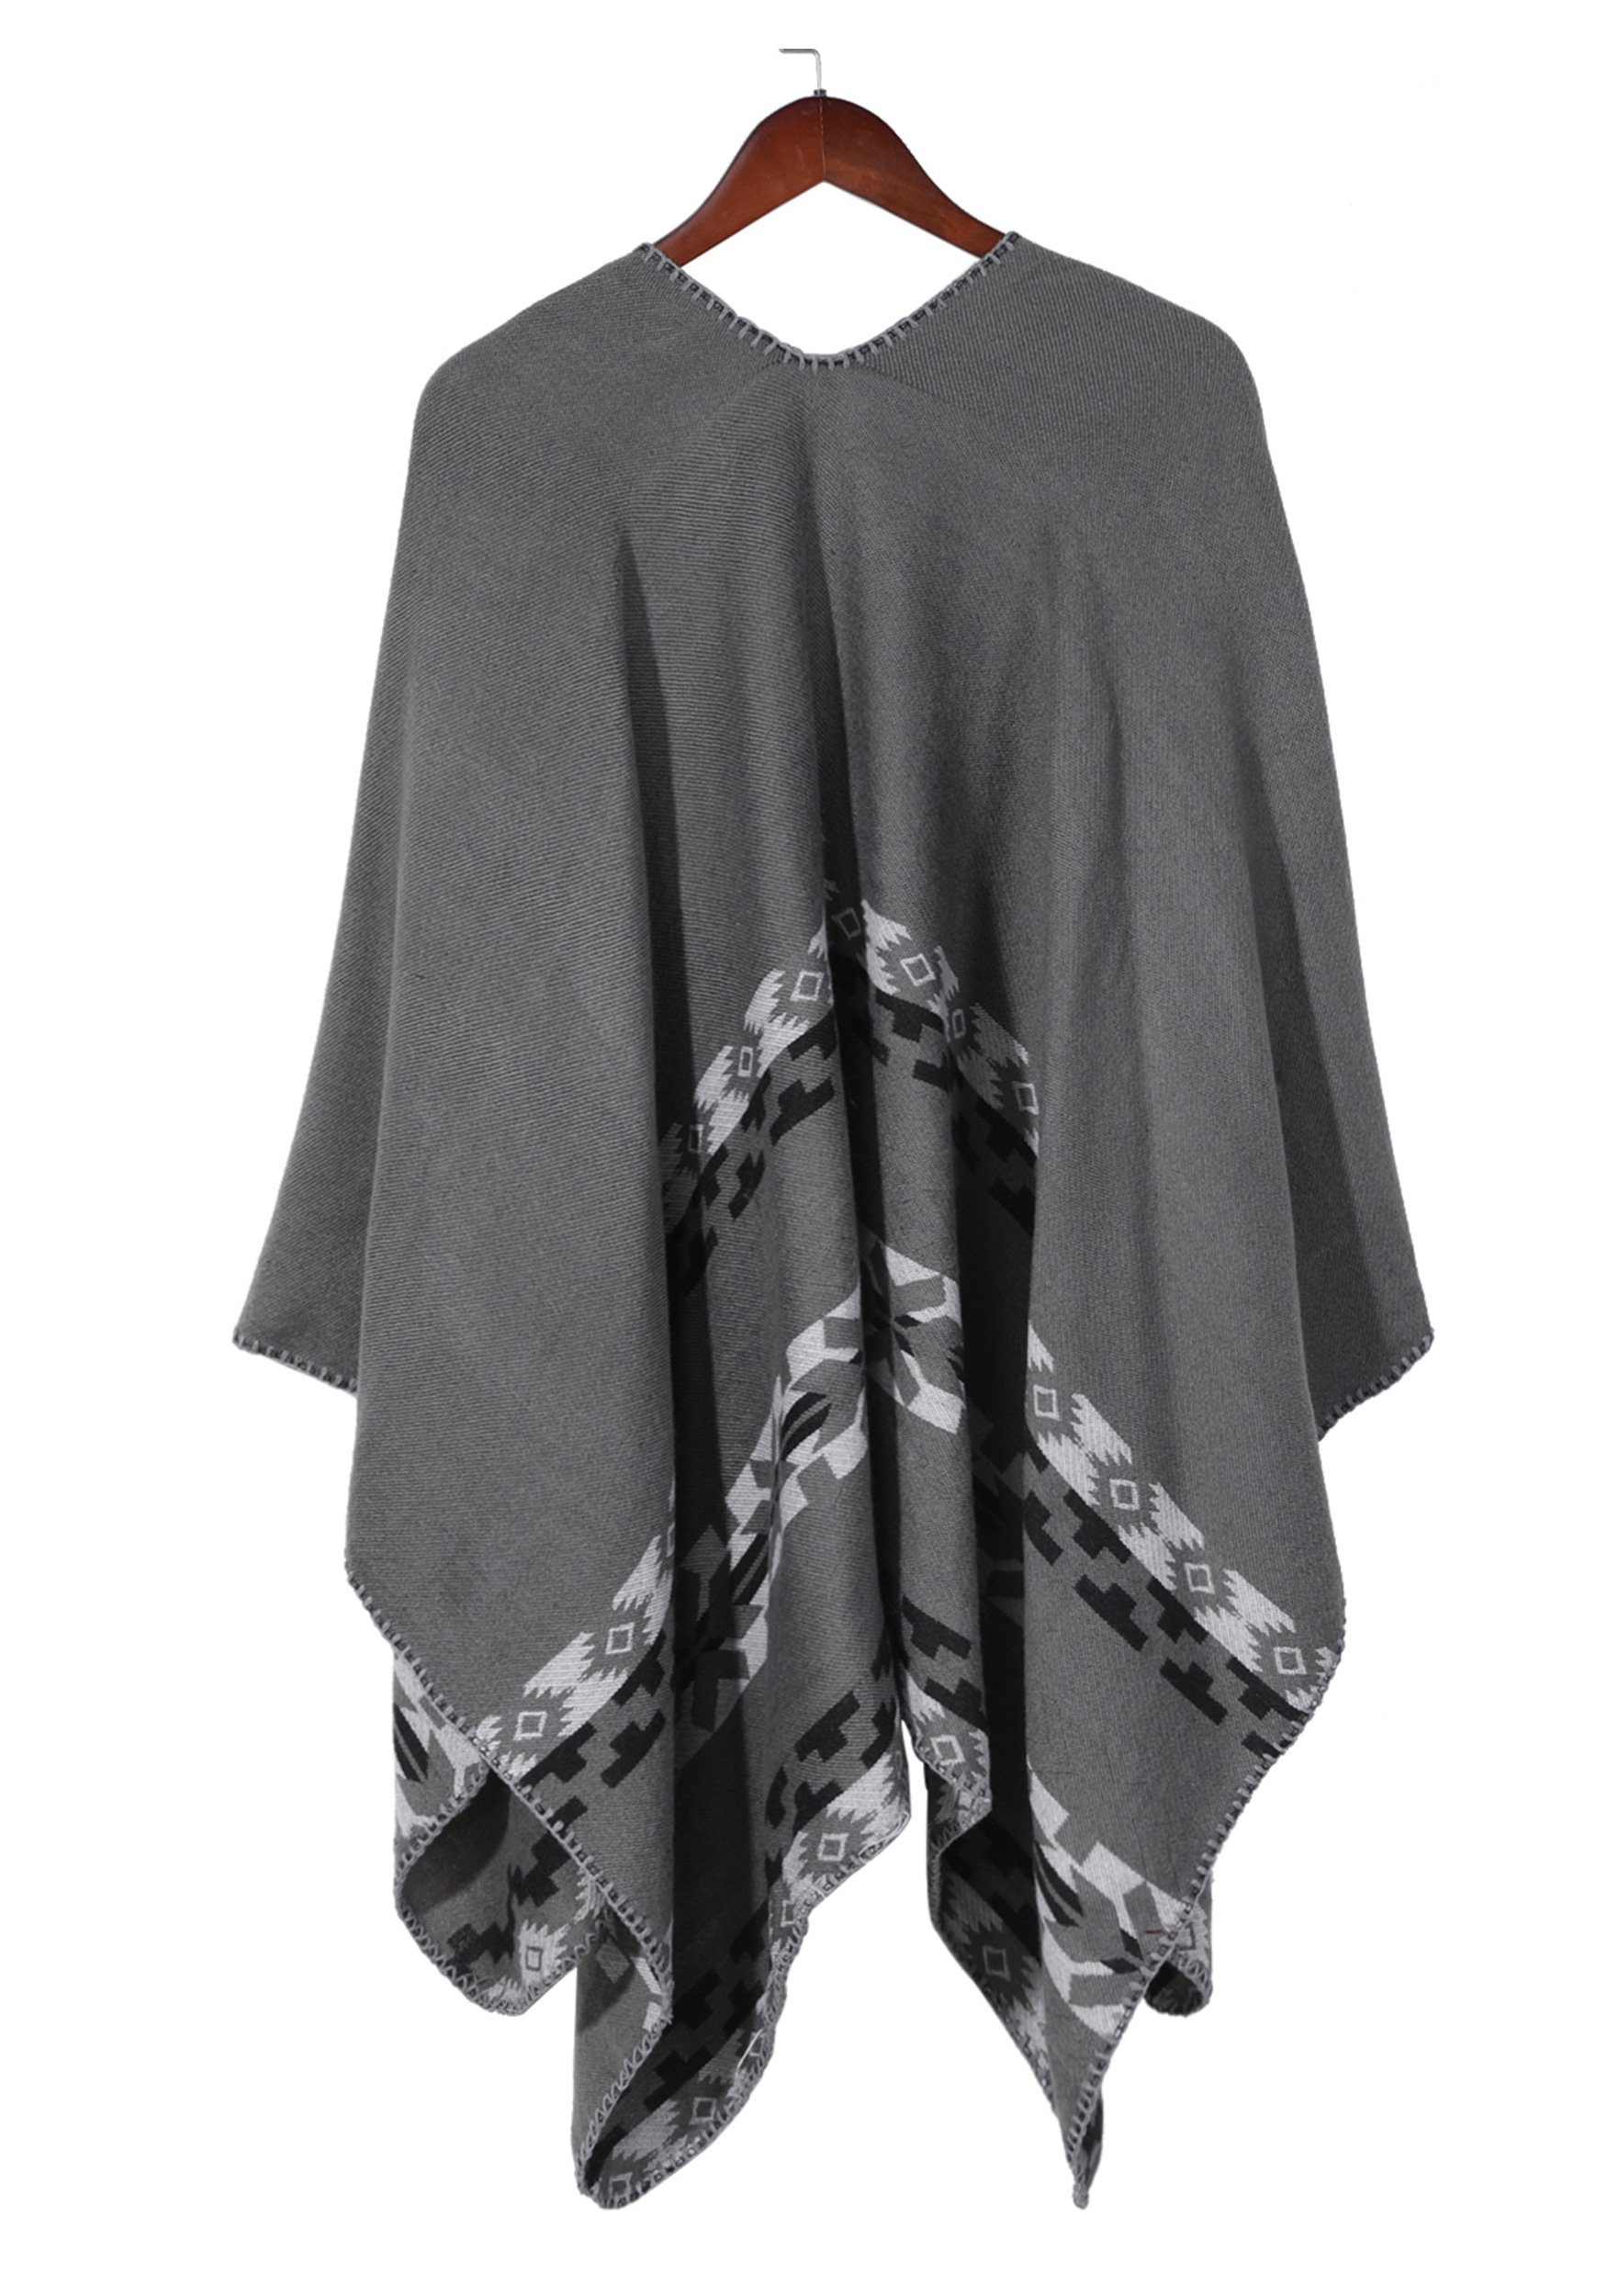 MAGICSHE Regenponcho Open mit und Damen Retro Argyle-Muster Front Schal print,elegant Design grau stilvoll Umkenrbares